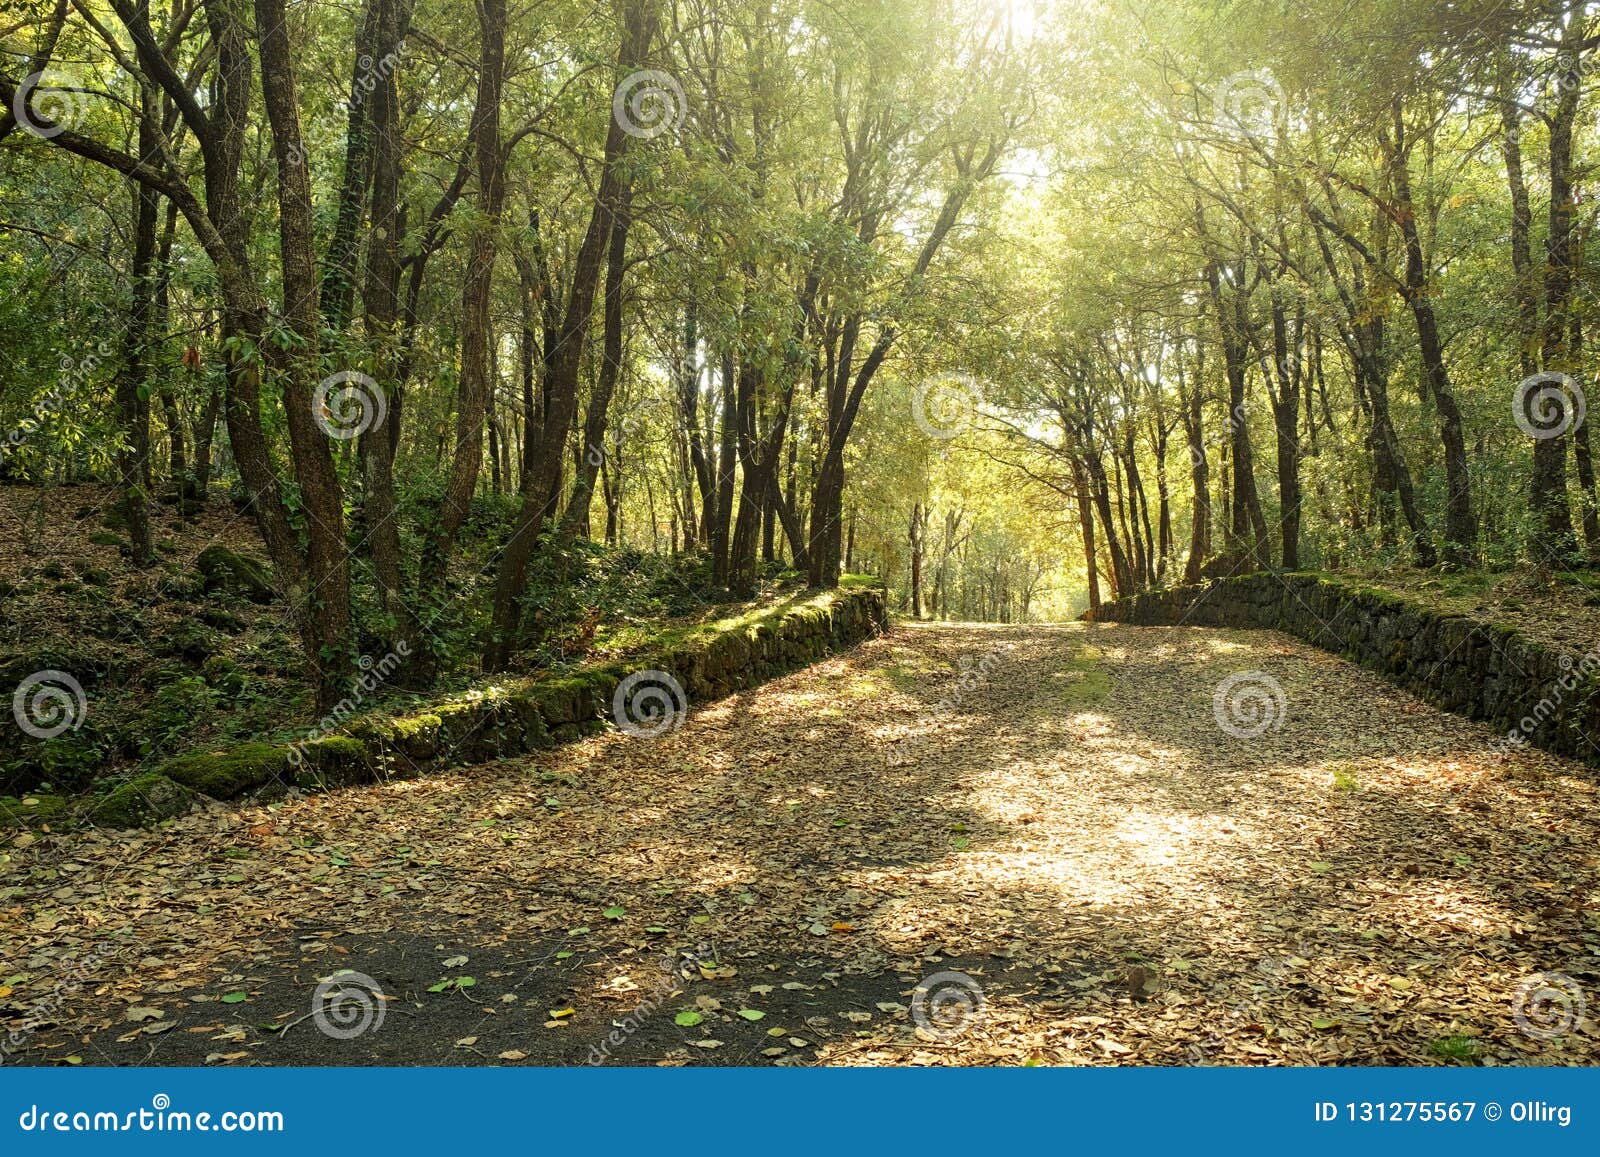 sunlight on path in oak woods of etna park, sicily